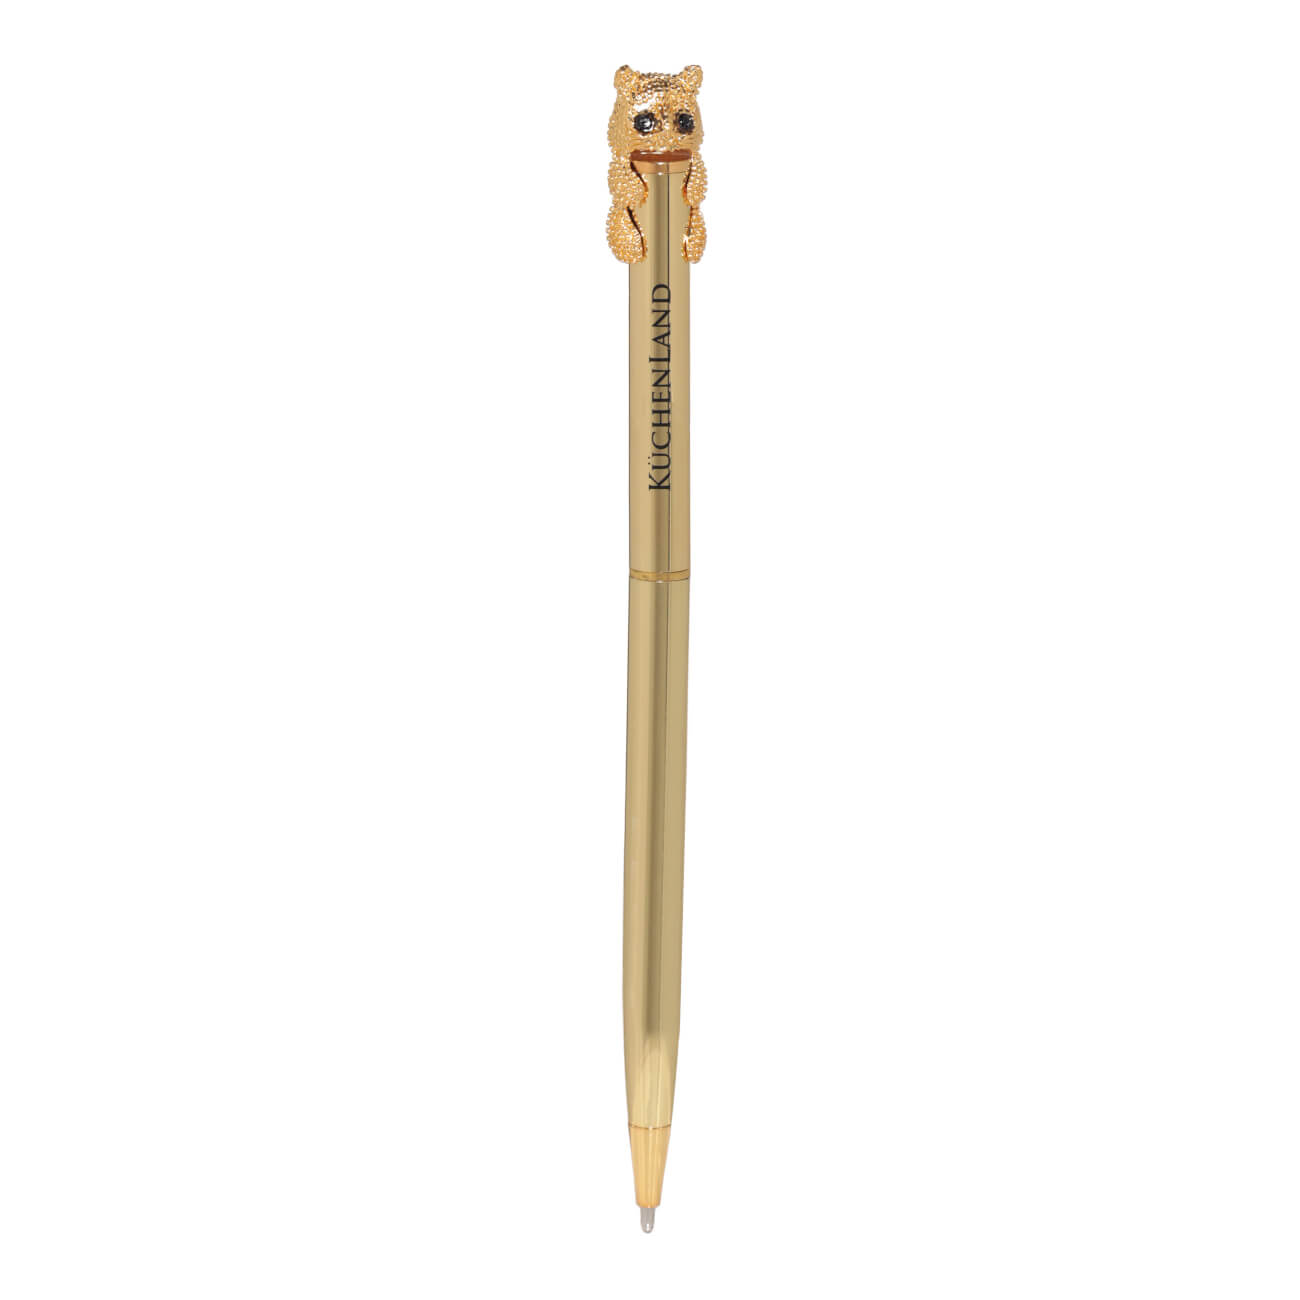 Ручка шариковая, 14 см, с фигуркой, золотистая, Кот, Draw figure автоматическая шариковая ручка офисмаг